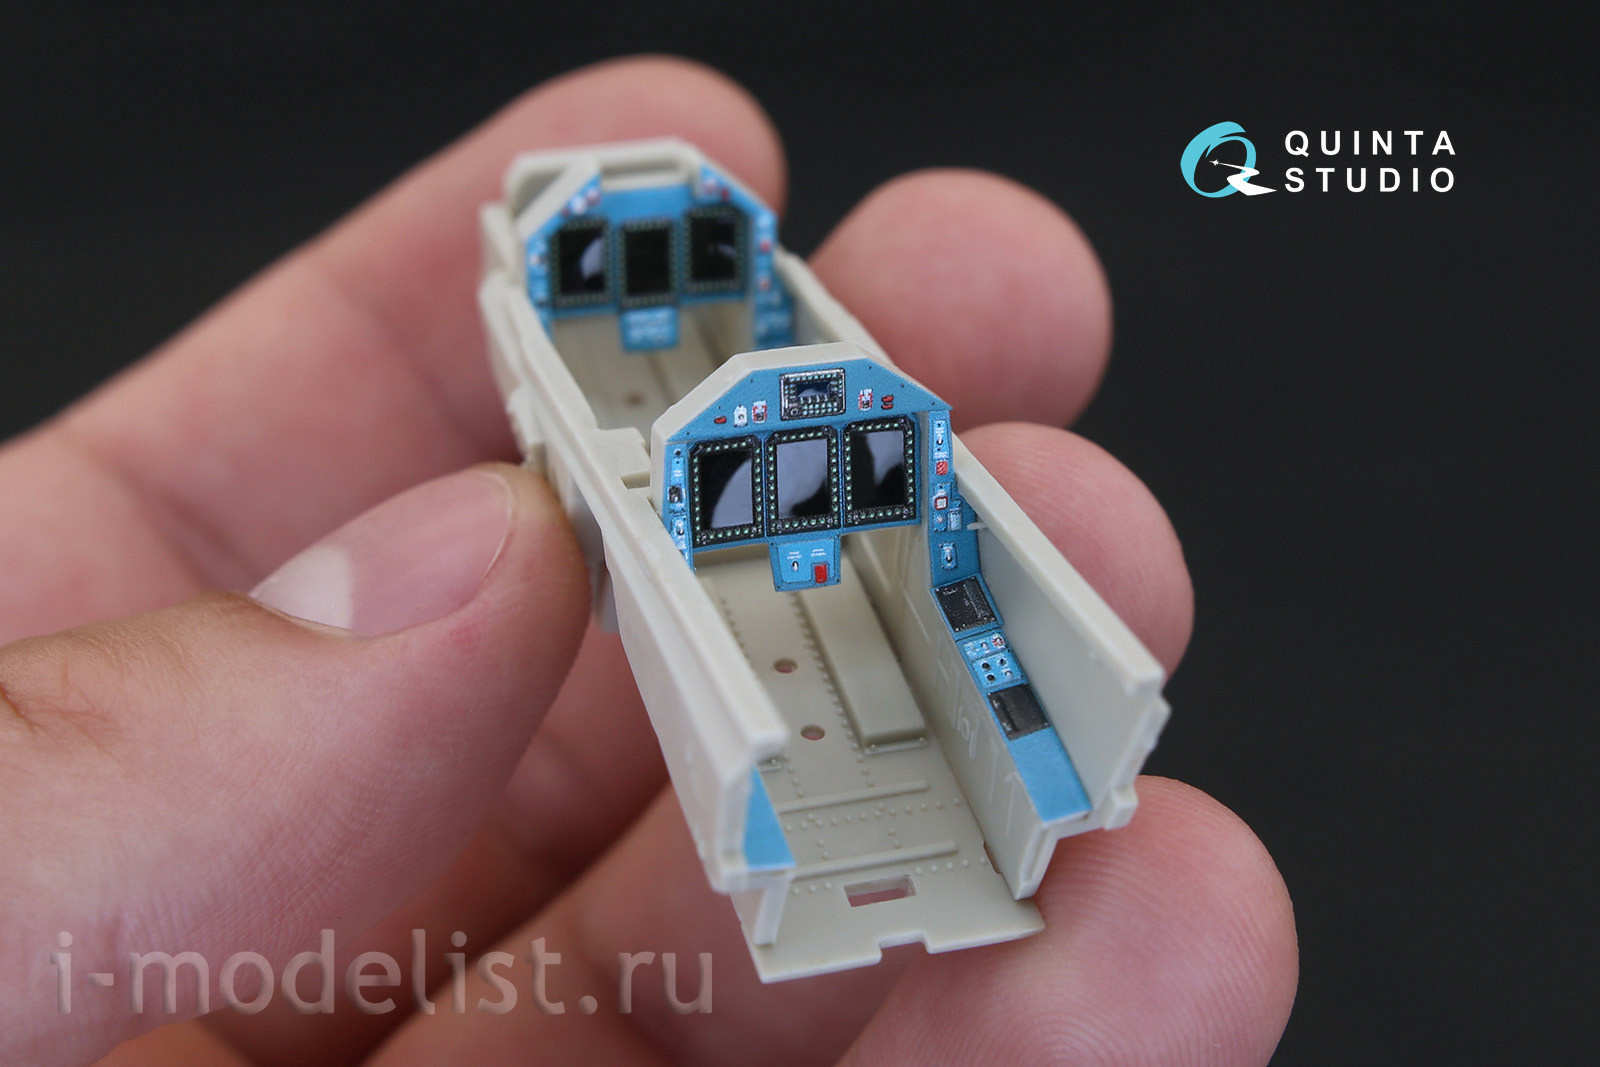 QD48157 Quinta Studio 1/48 3D Декаль интерьера кабины Яковлев-130 (для модели KittyHawk)